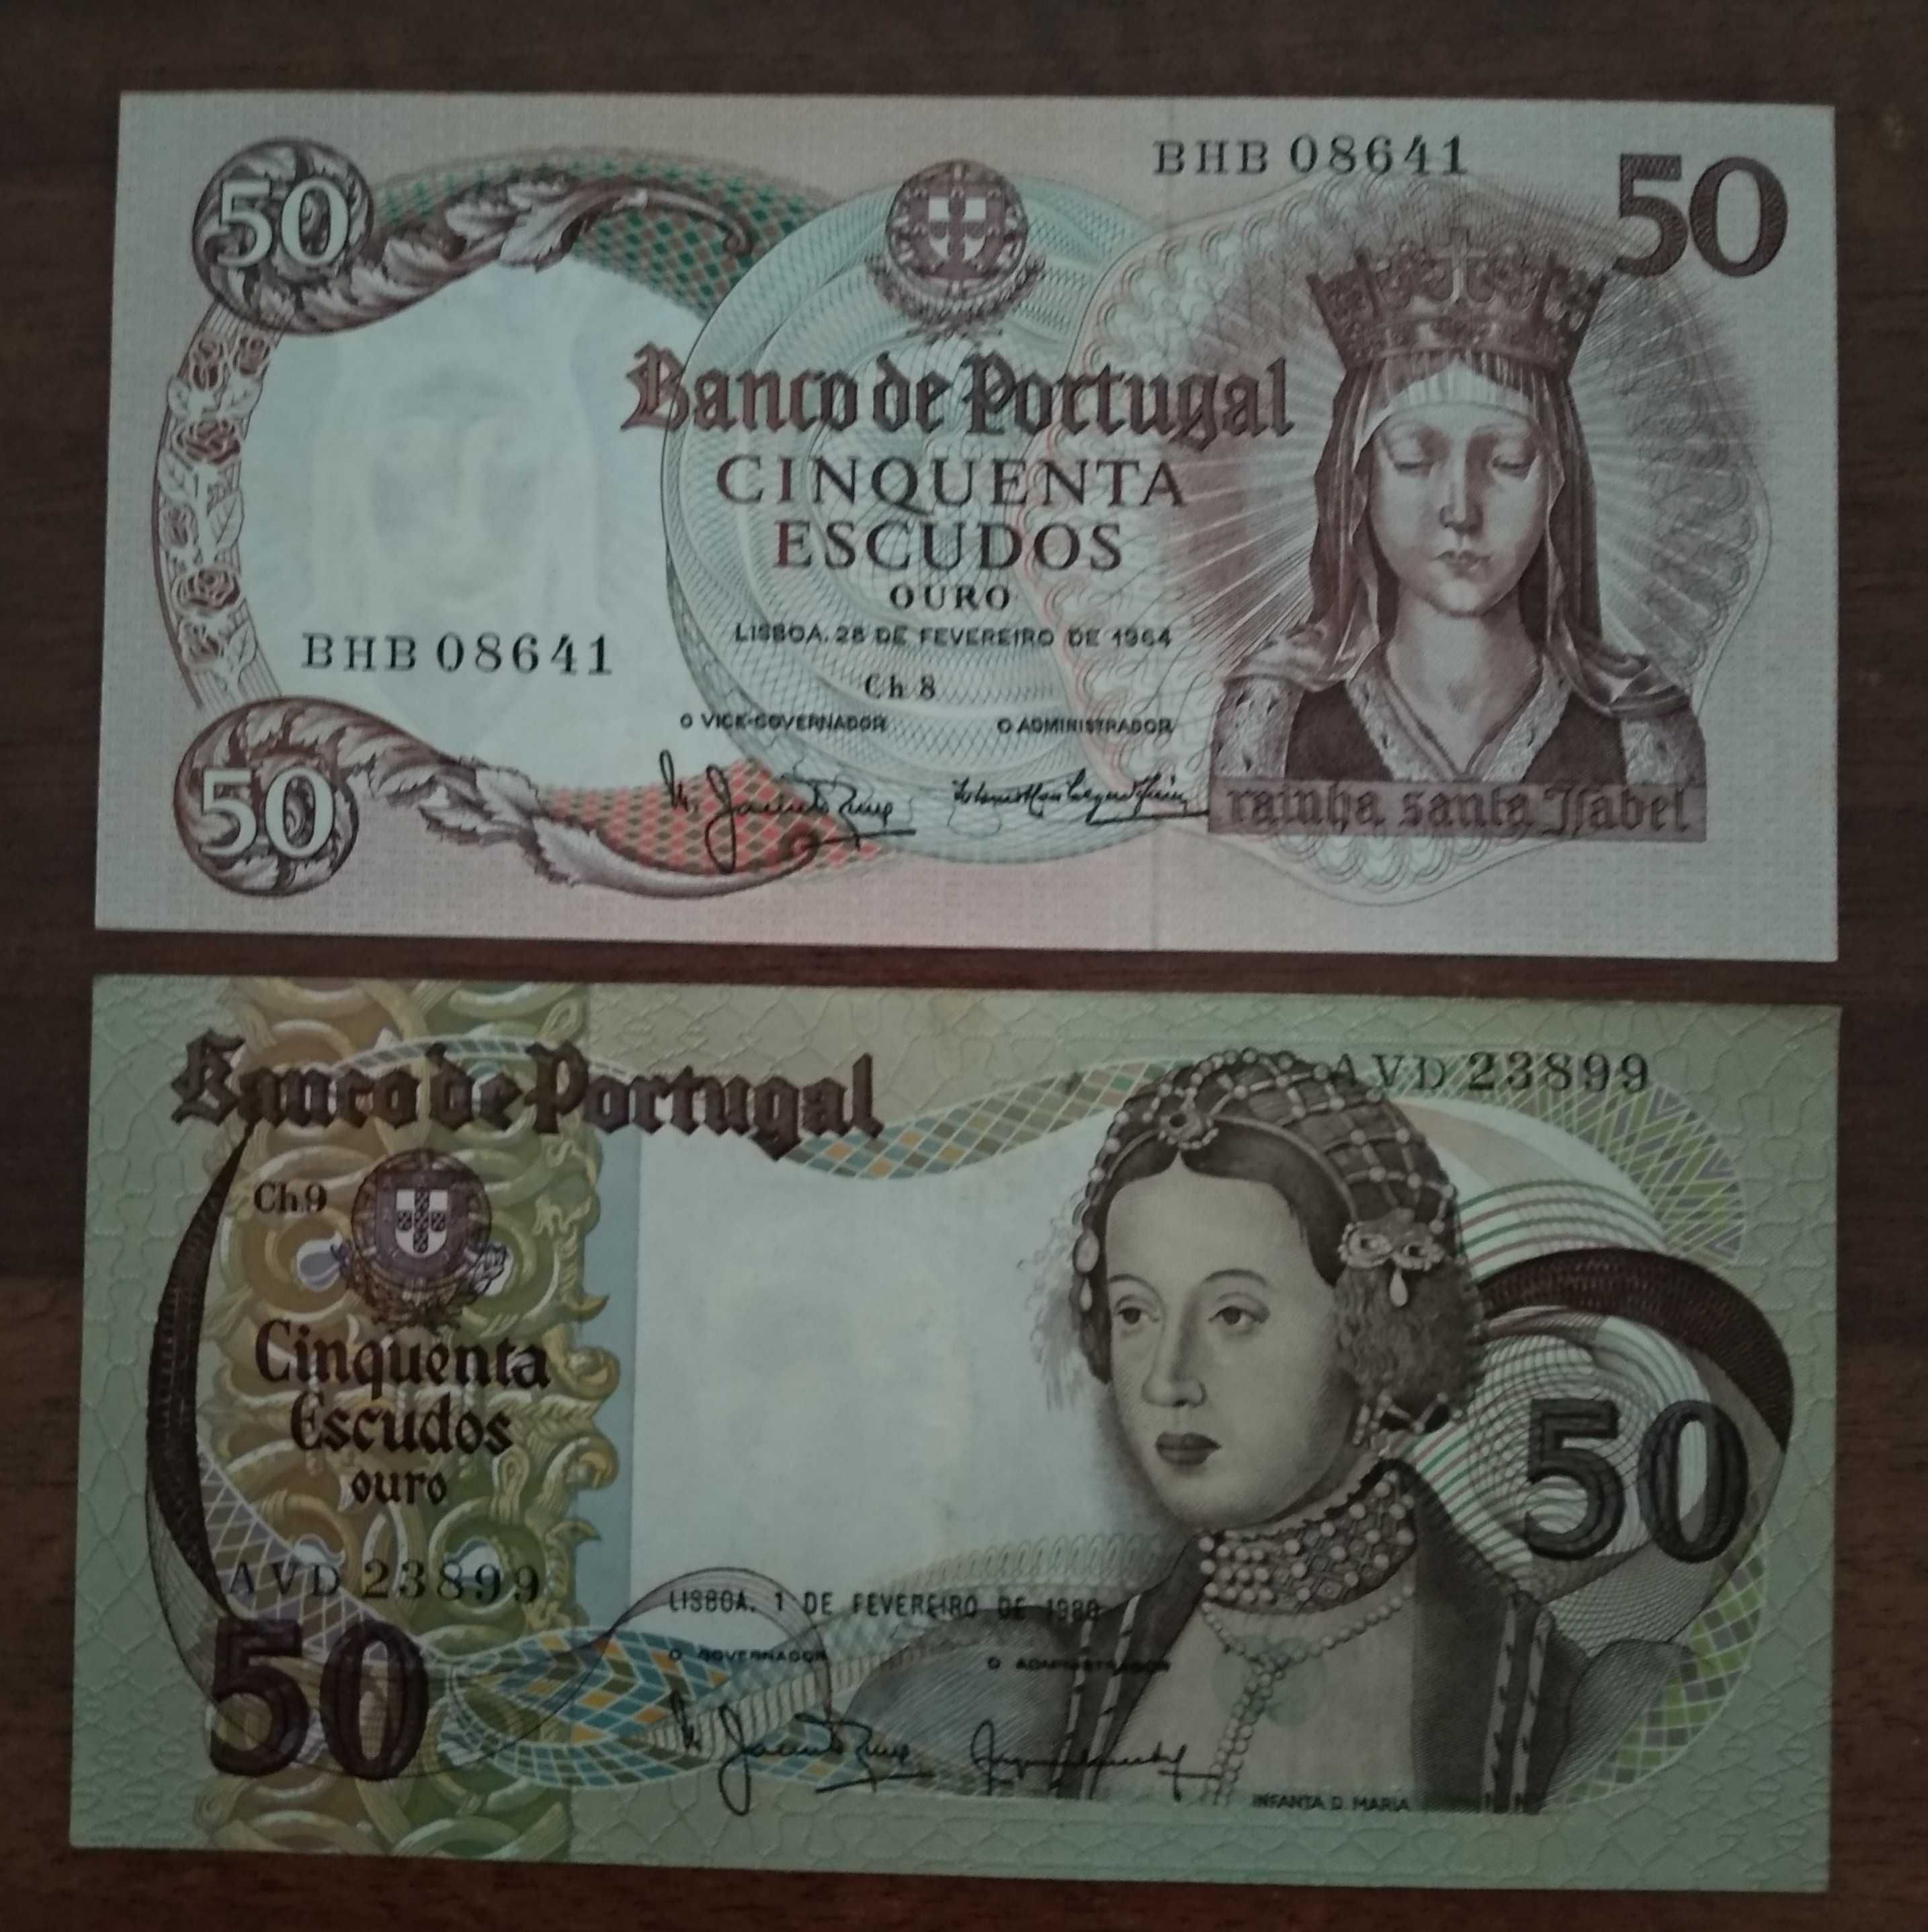 Notas de 50$00 do Banco de Portugal